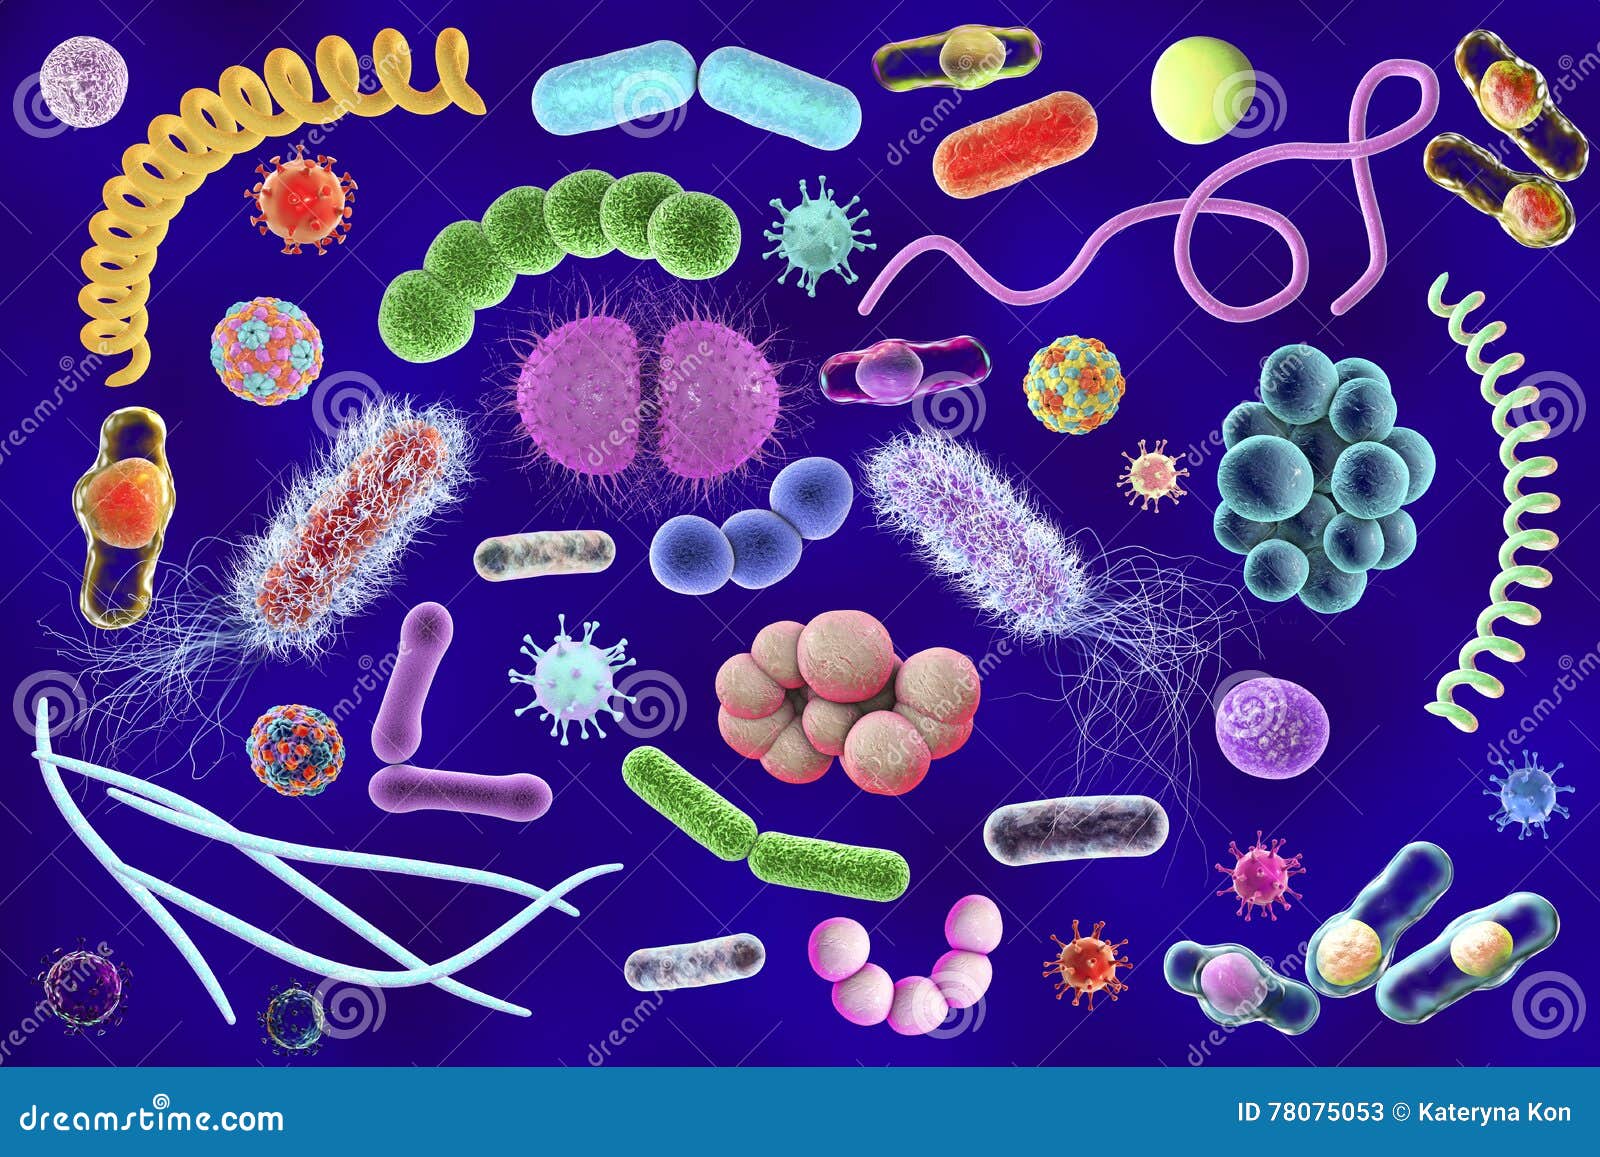 Три организма относящиеся к бактериям. Микробы. Микробы картинки. Бактерии и вирусы микробиология. Баннер инфекция бактерии.